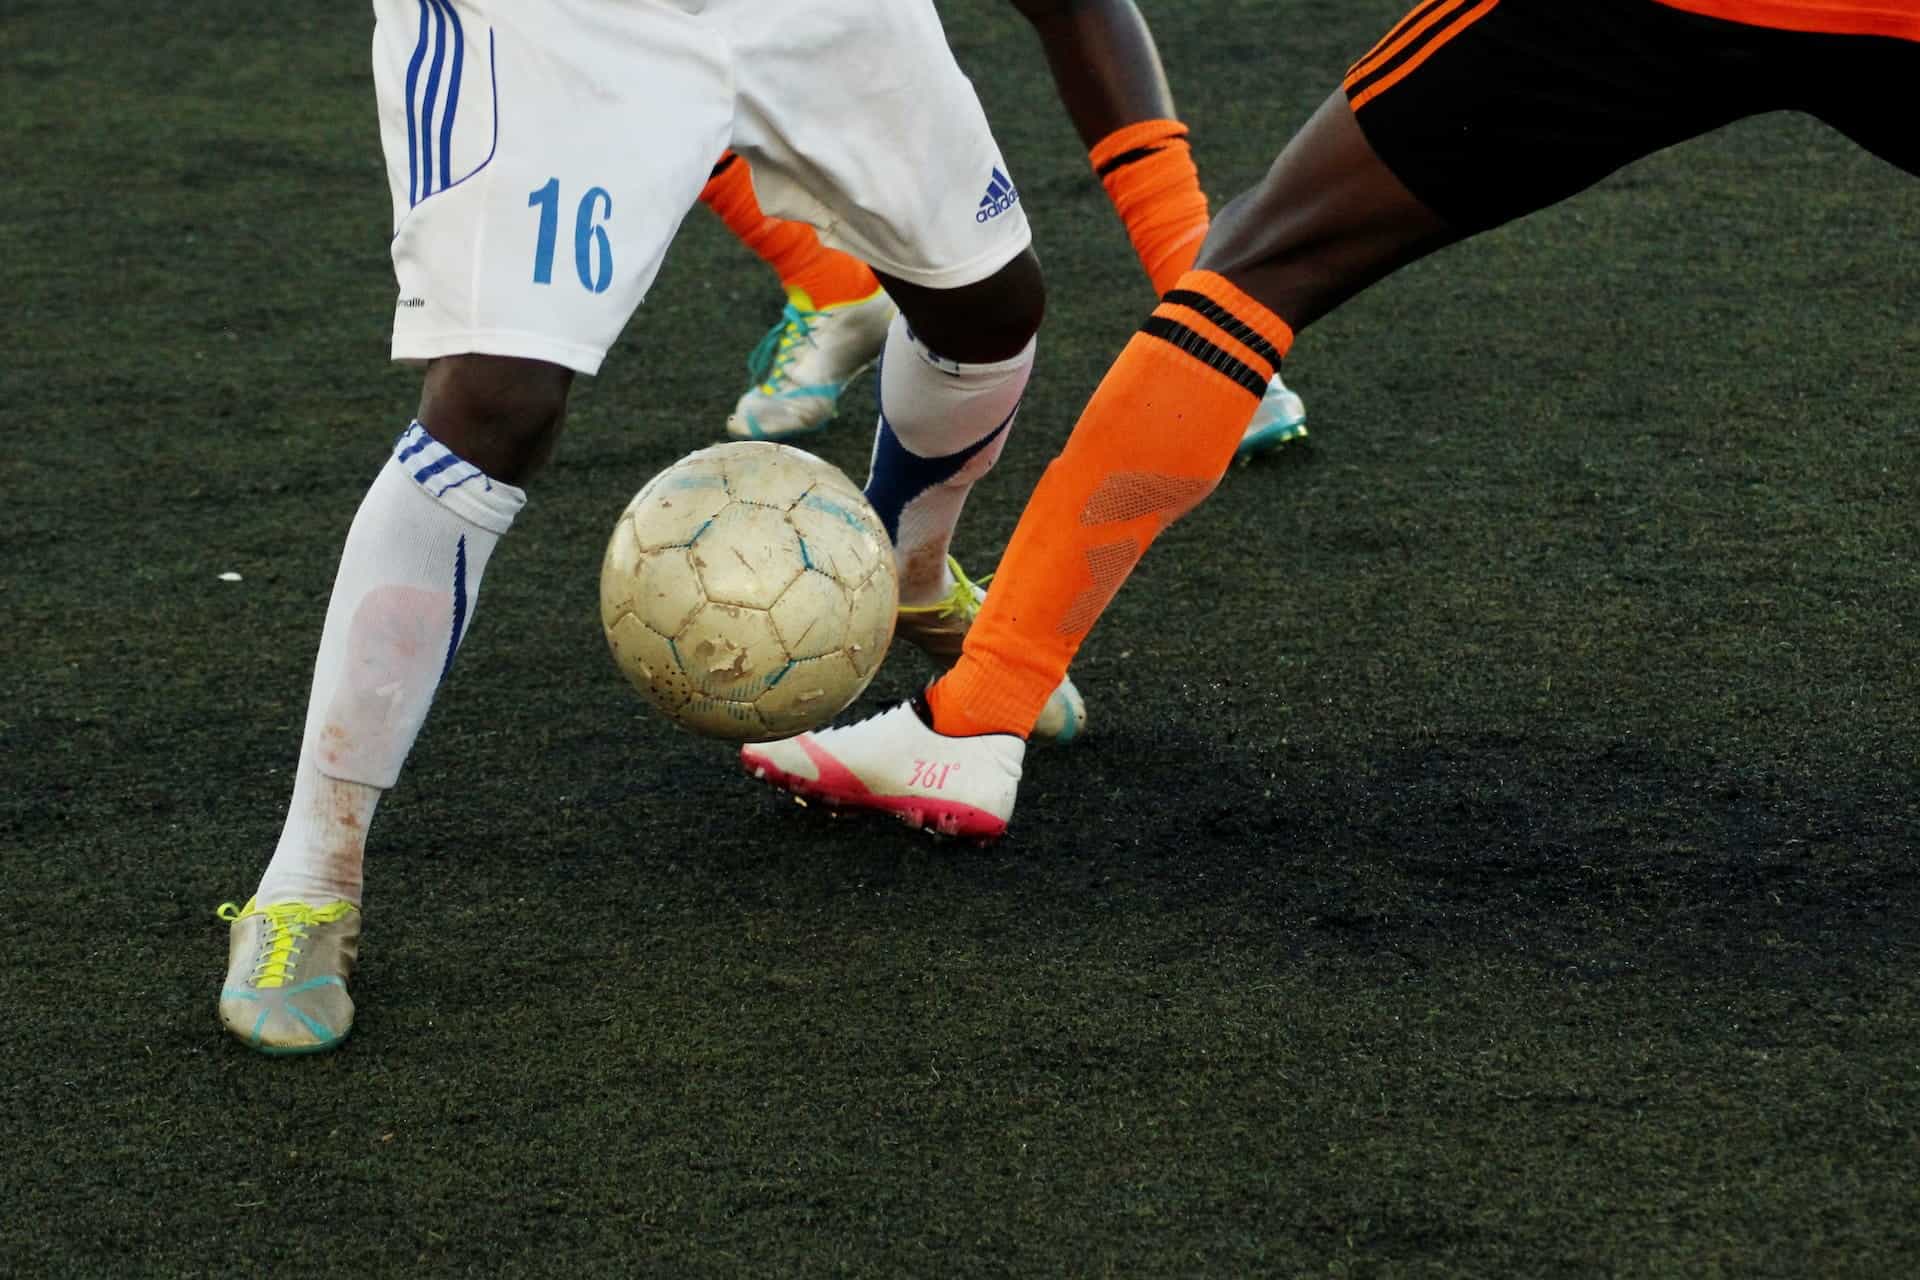 Beberapa kaki pemain meraih bola sepak selama pertandingan. 